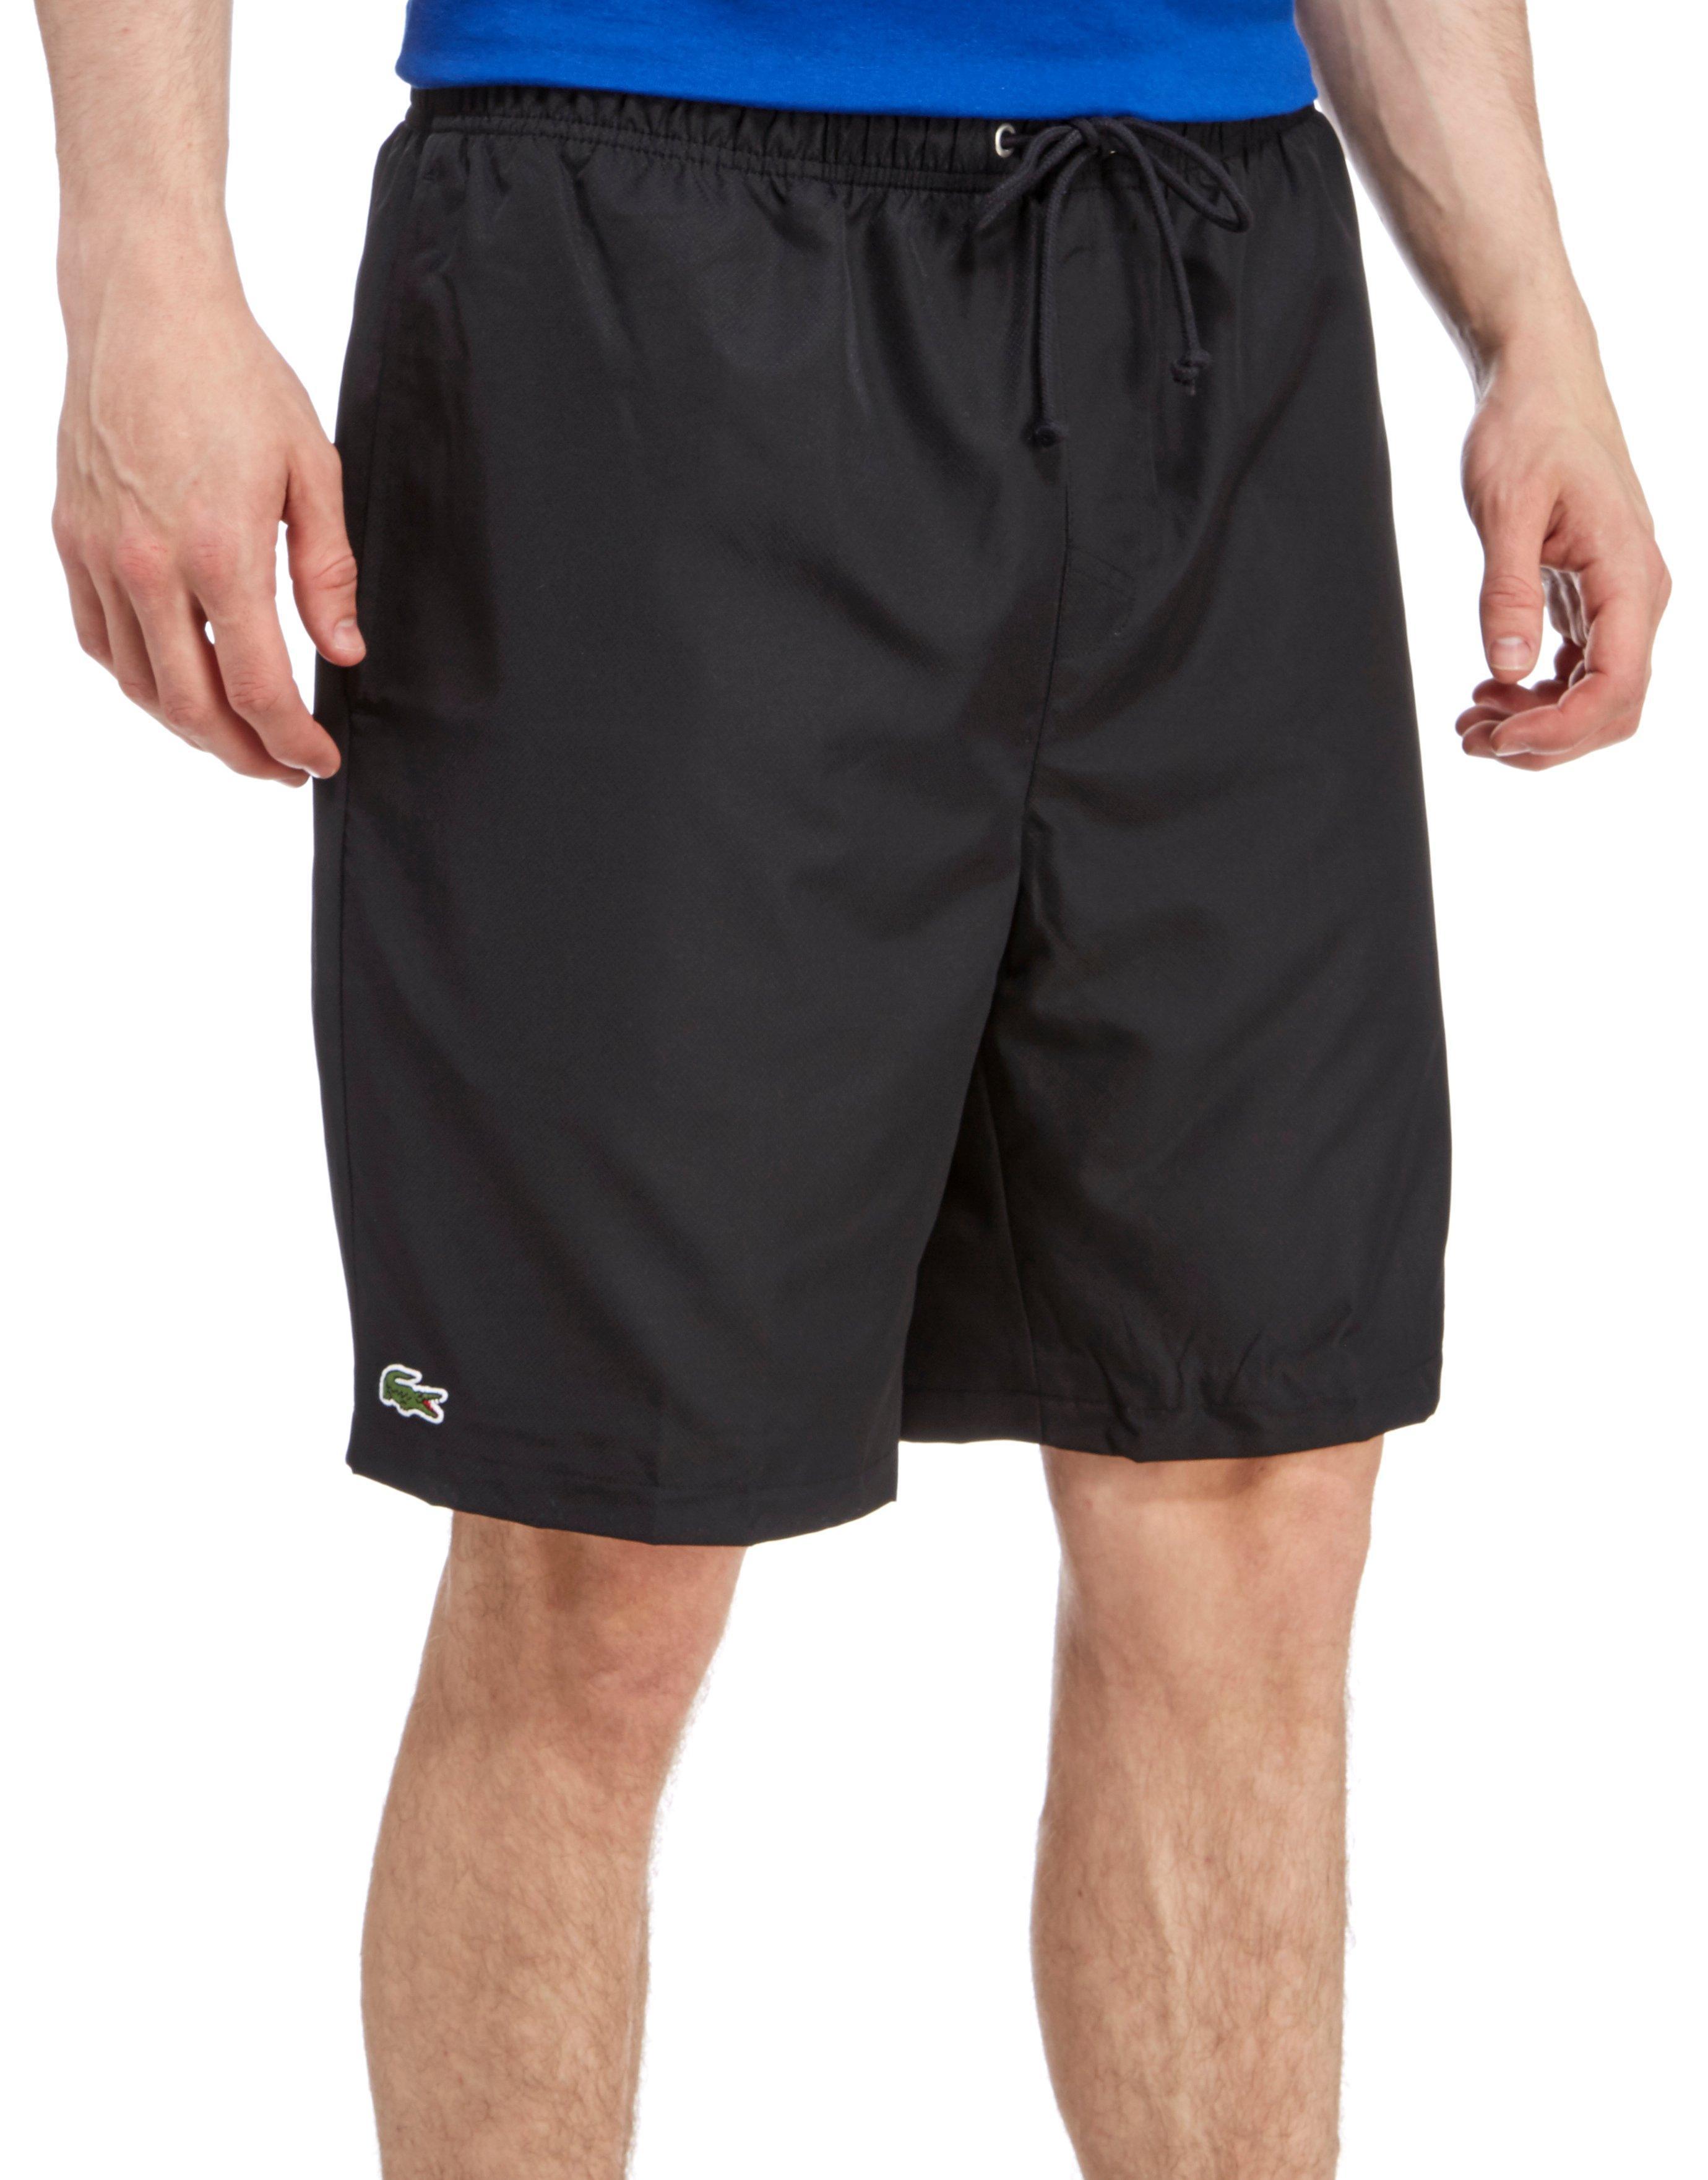 Lacoste Cotton Quartier Shorts in Black for Men - Lyst